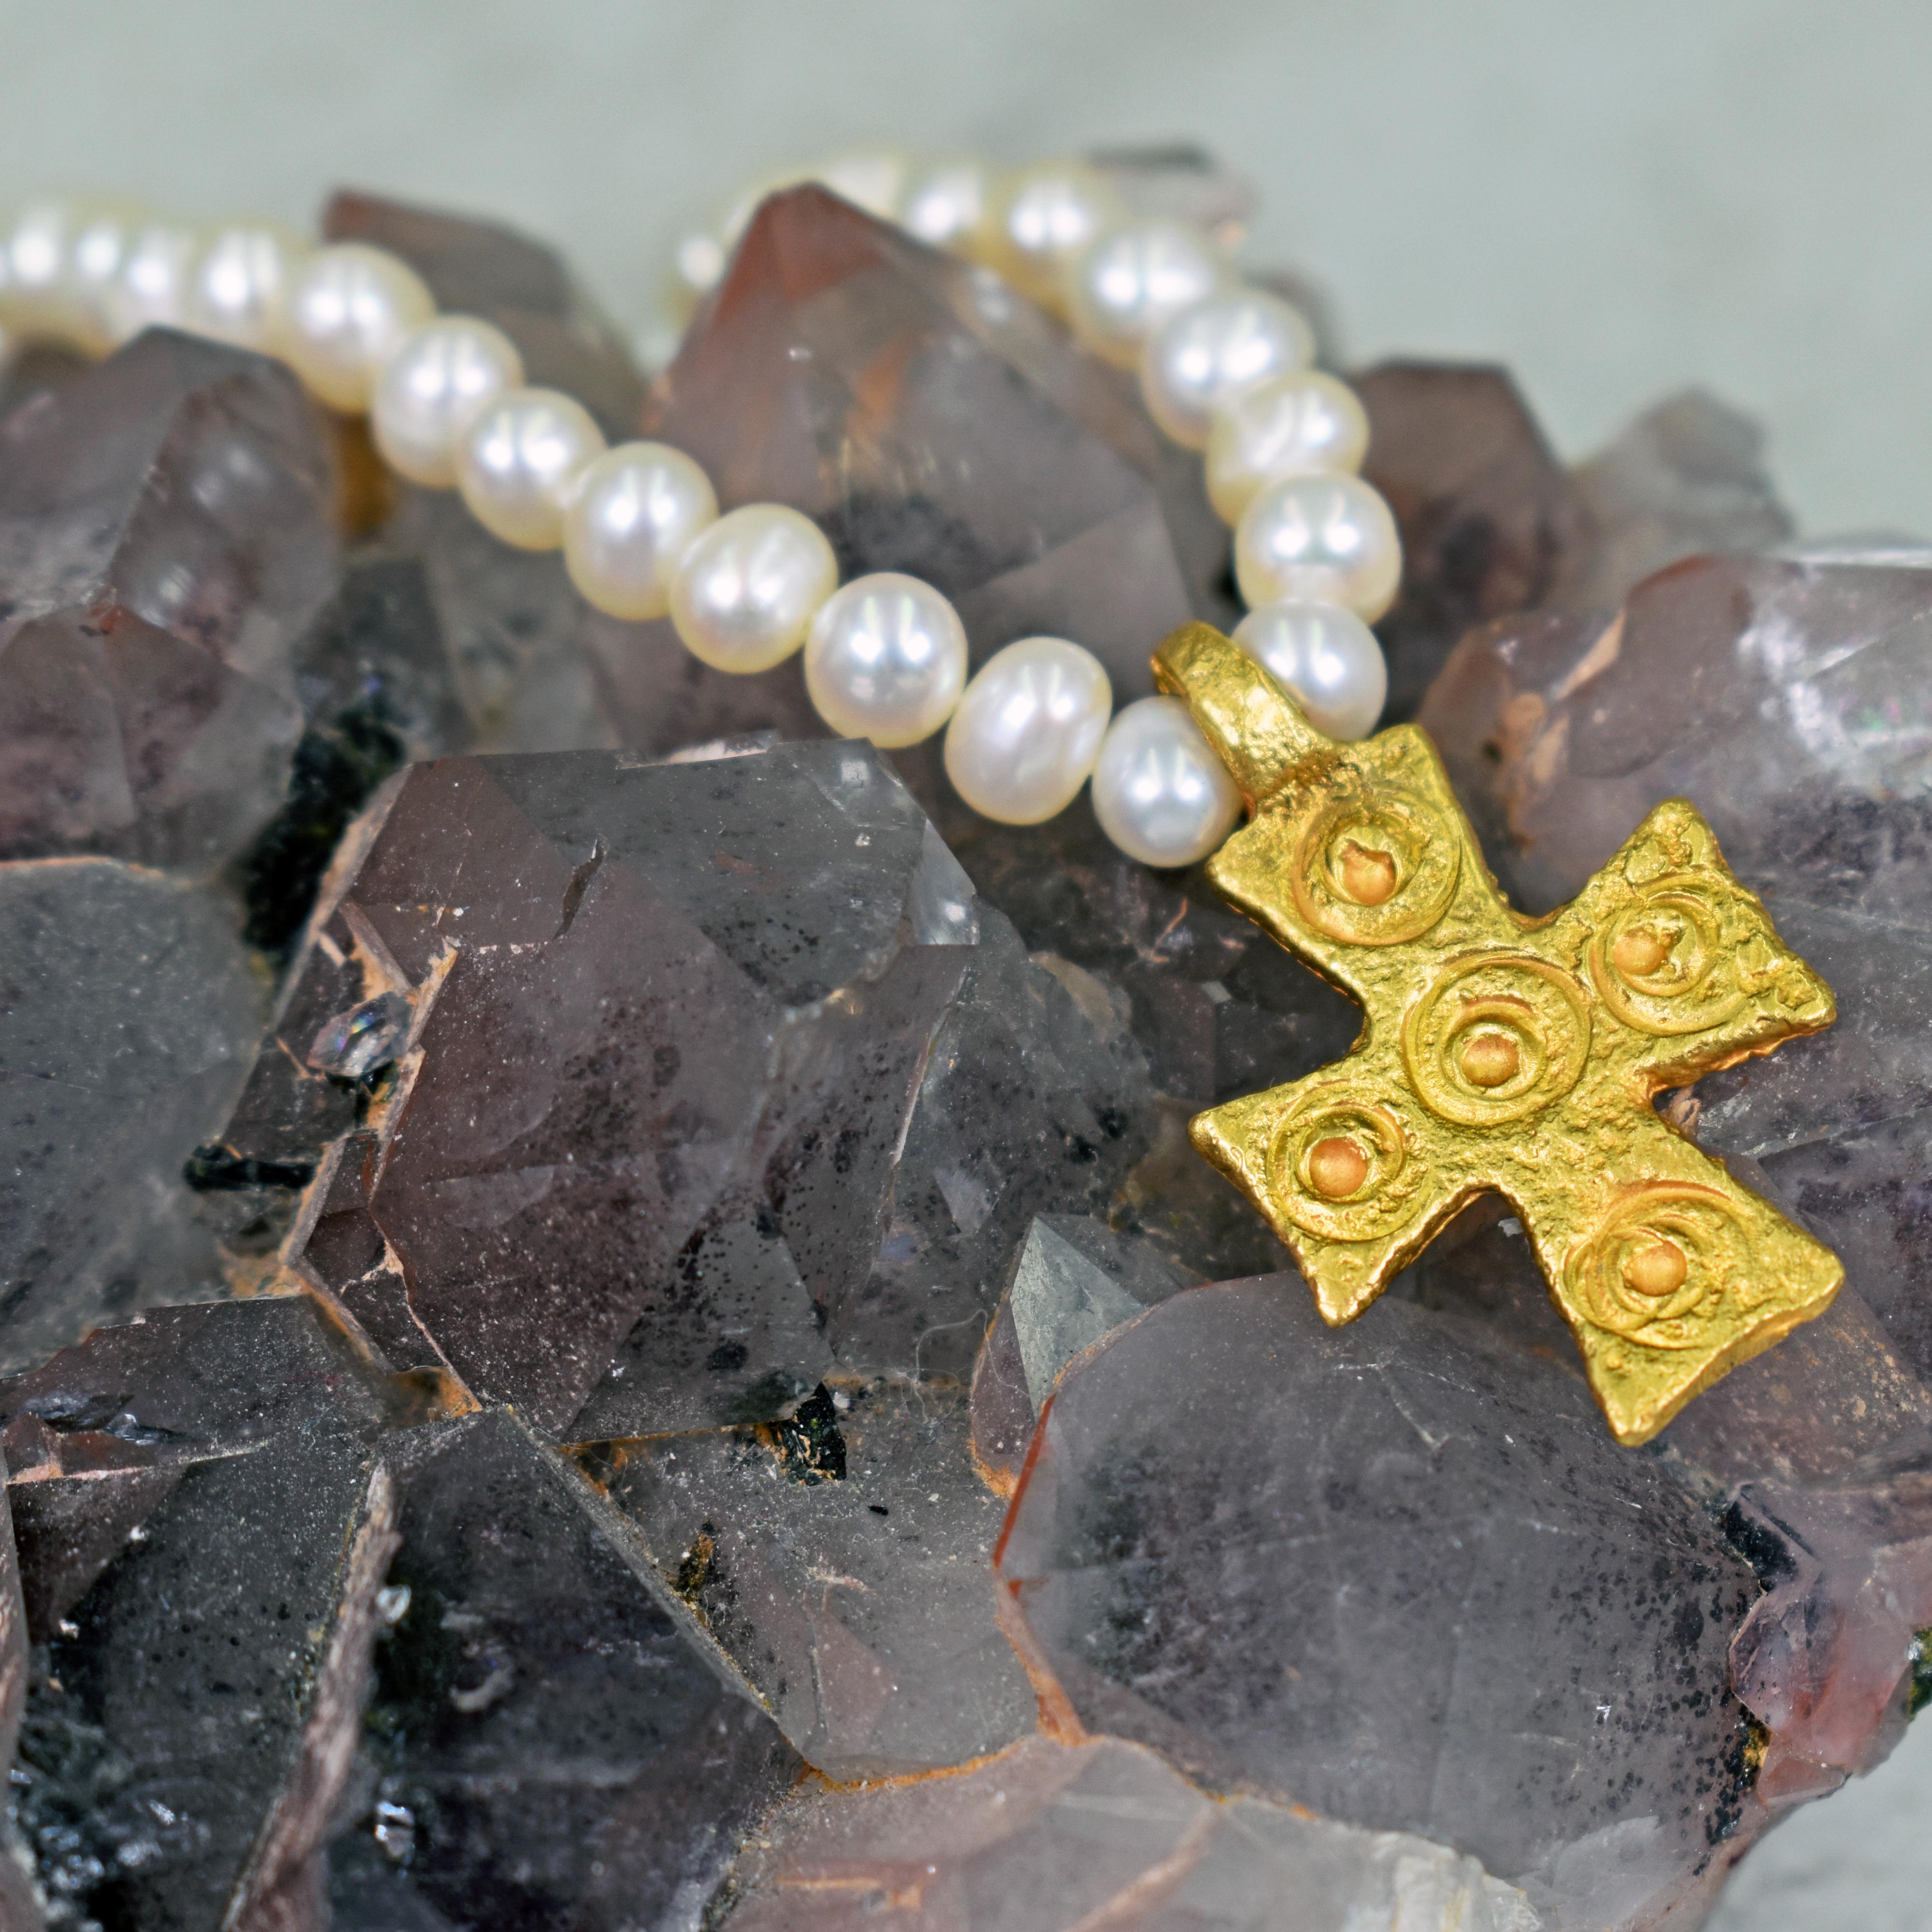 Byzantinischer Stil 22k Gelbgold Kreuz Anhänger auf weißen Süßwasserperlen Perlenkette. Die Halskette ist mit einem Hakenverschluss aus 22 Karat Gold versehen. Die Perlenkette ist 16 Zoll lang, und der Goldanhänger, einschließlich Bügel, ist 1 Zoll